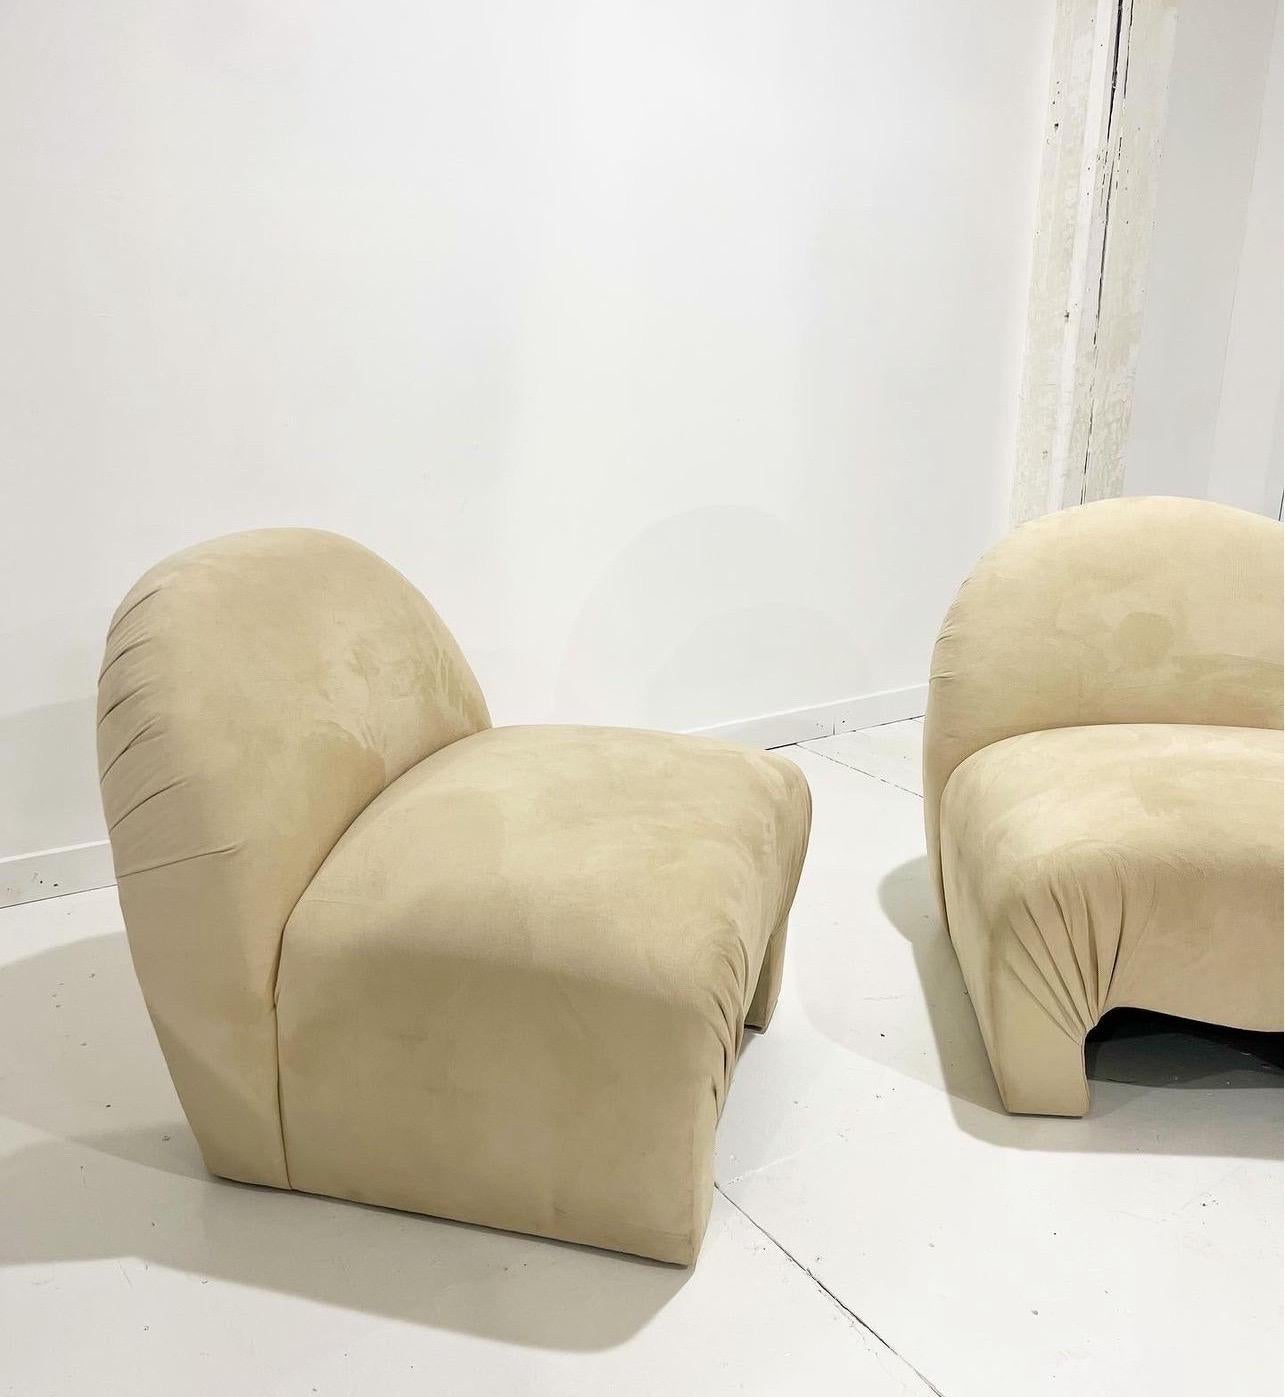 Atemberaubendes Paar skulpturaler Lounge-Sessel für Weiman

Die perfekten Sessel für das flache Wohnen. Ich liebe die geschwungenen, skurrilen und organischen Formen dieser Stühle! Diese Stühle sind äußerst bequem und gemütlich. Gepolstert mit einem